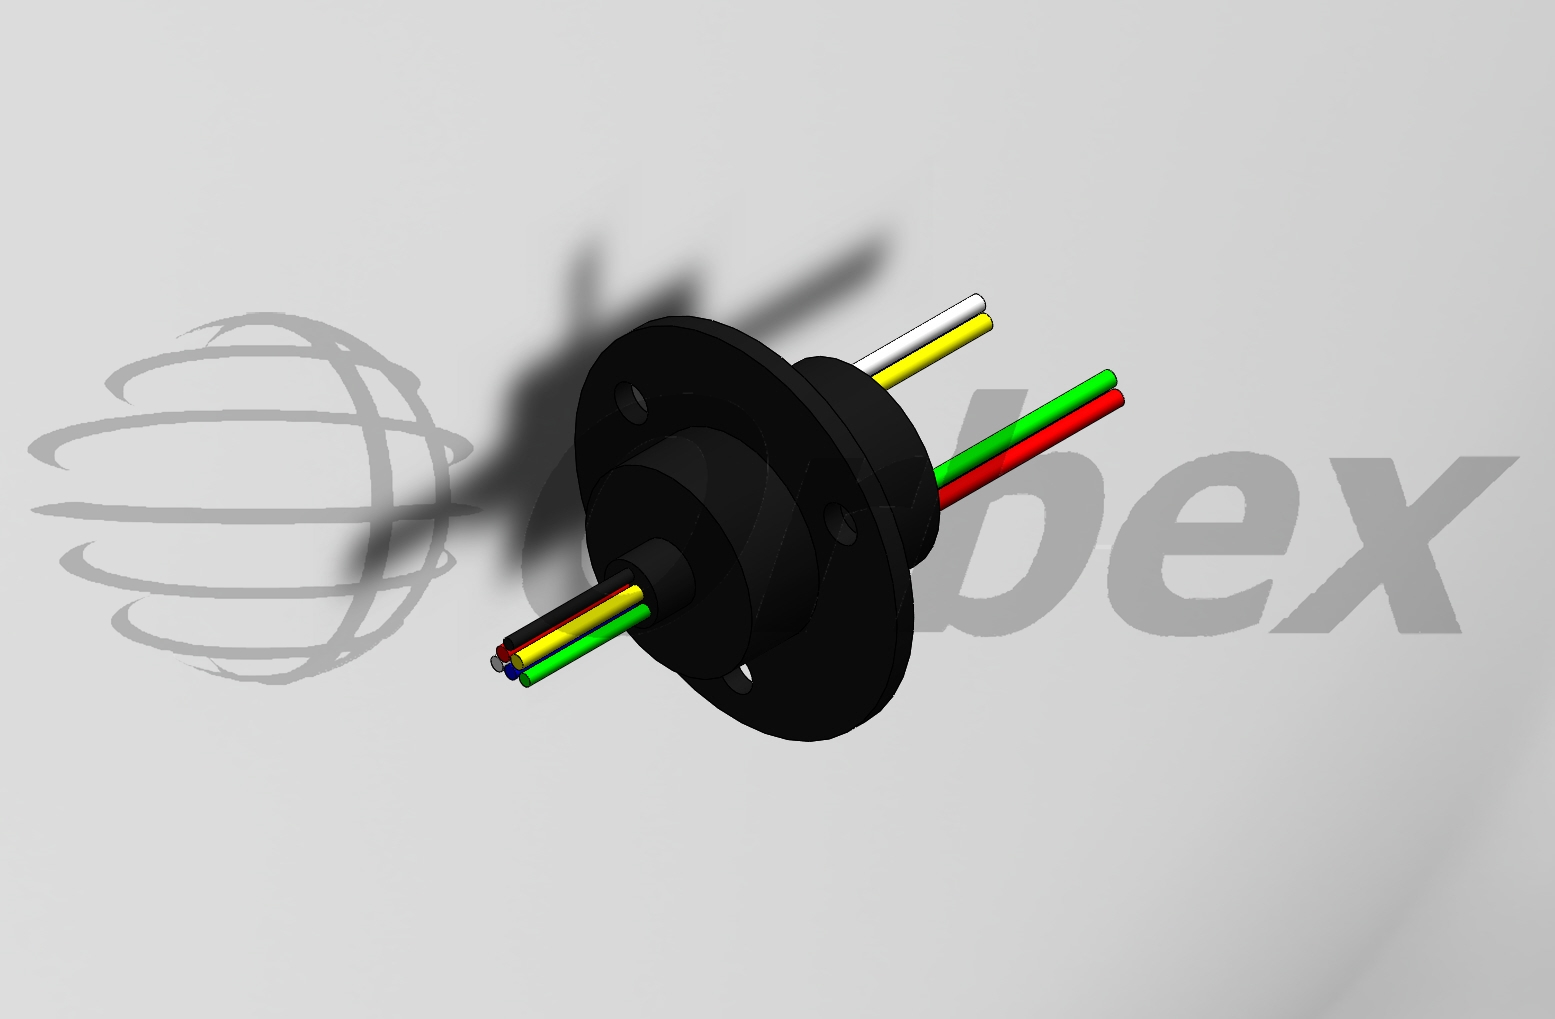 美国Orbex 集团 -312M1-0600 Miniature Slip Rings微型滑环